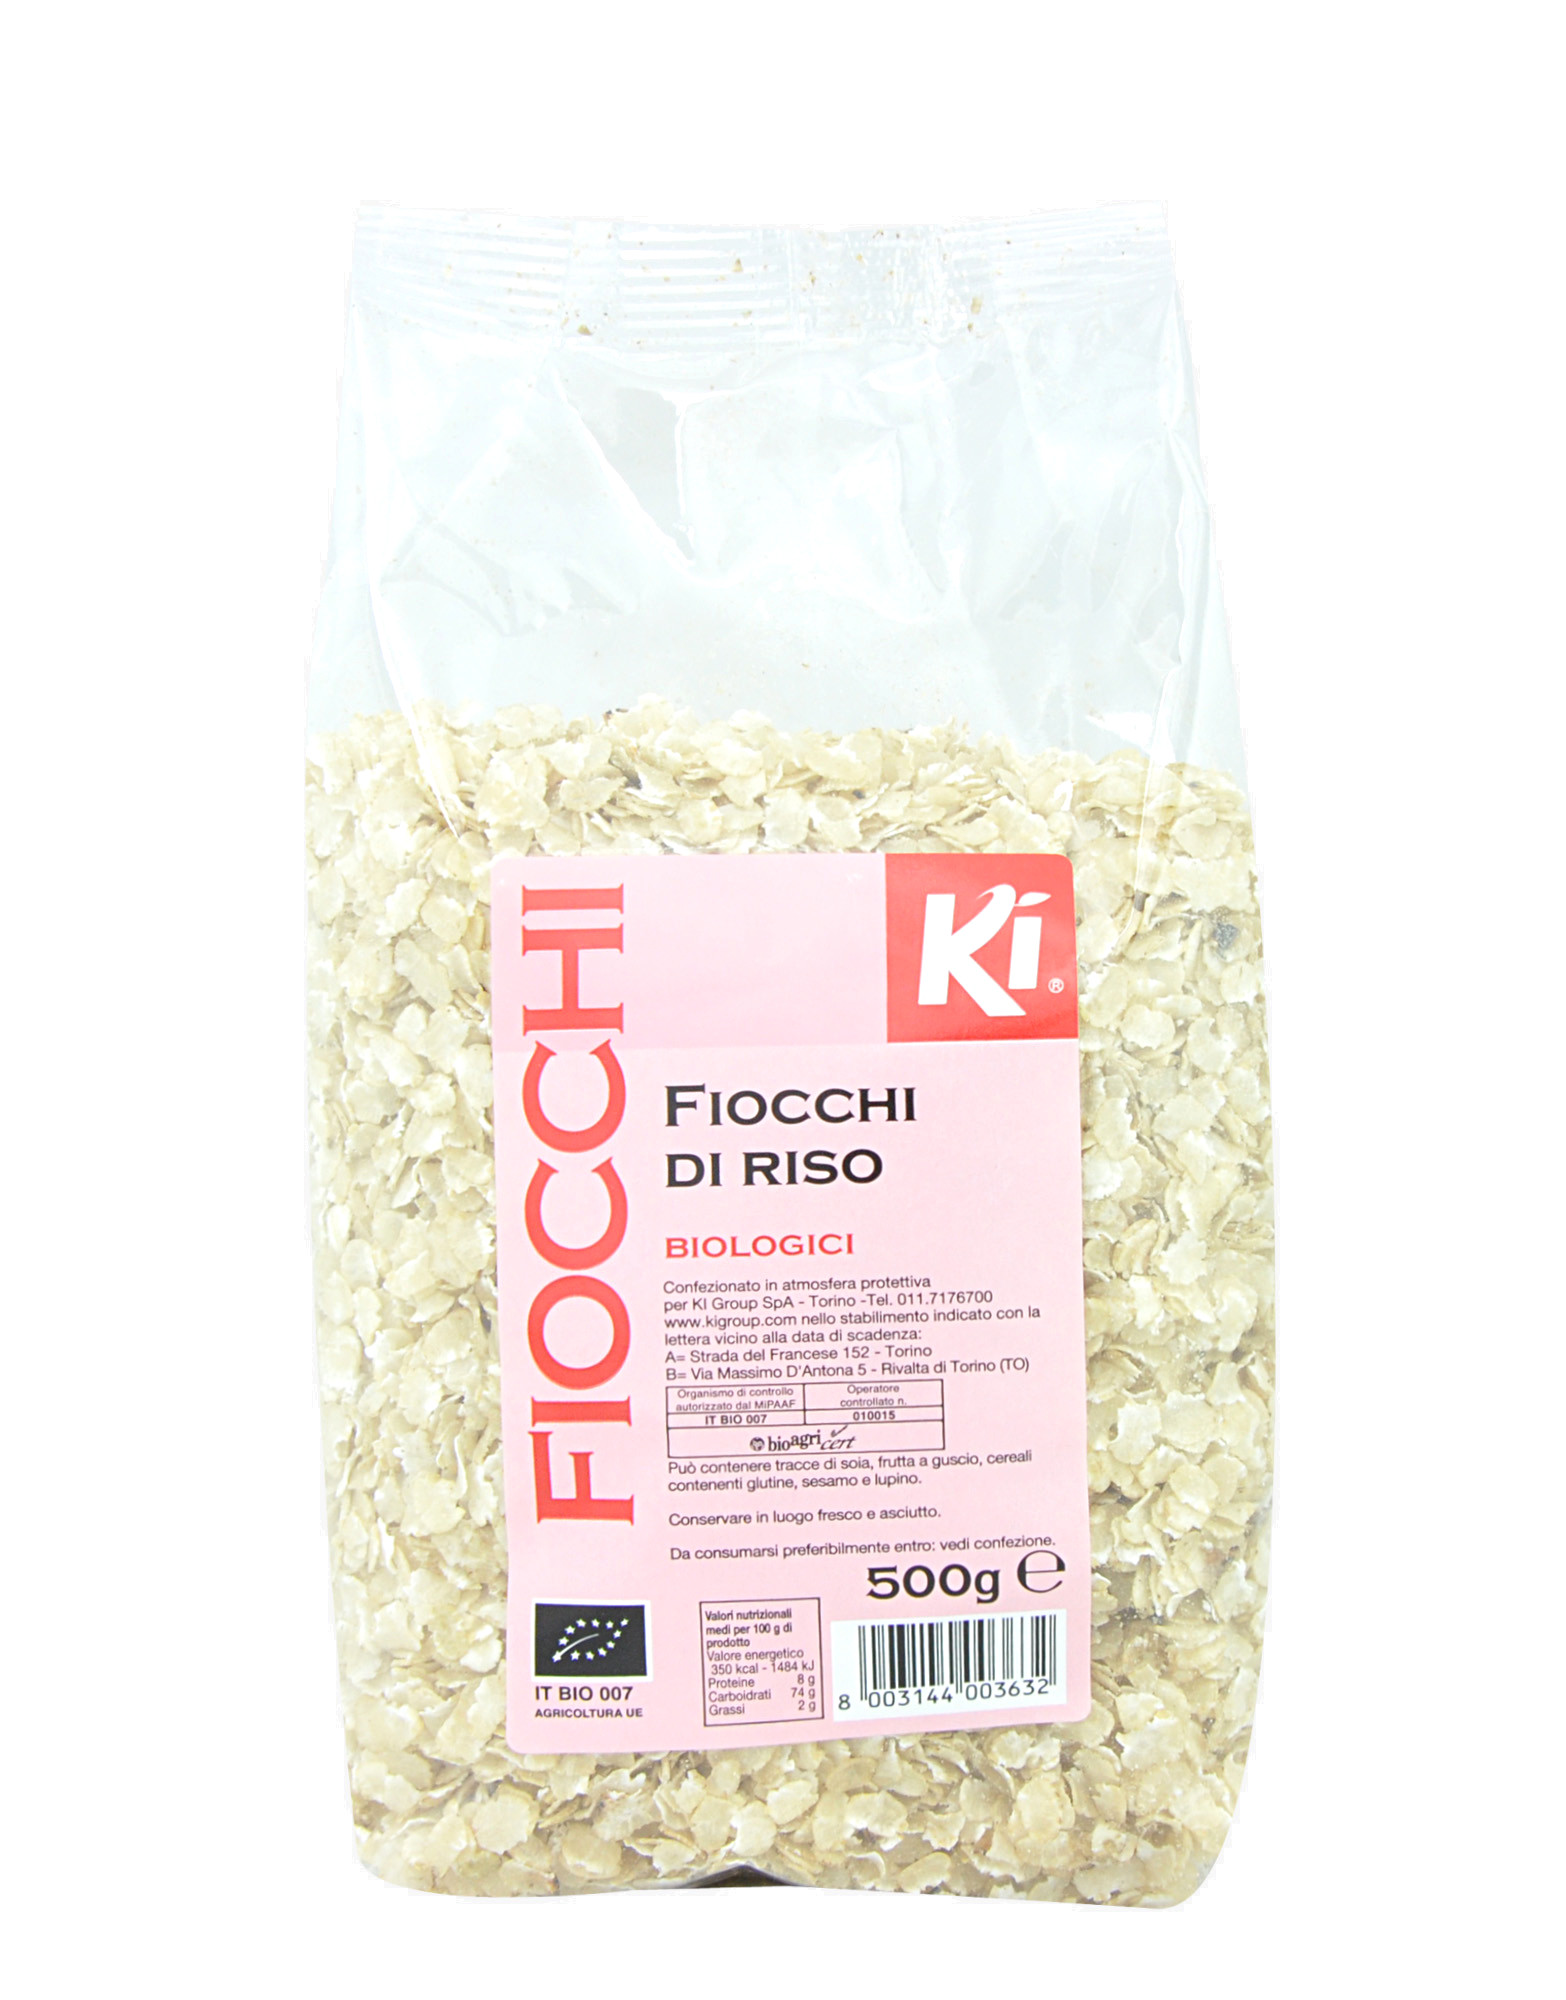 Fiocchi - Fiocchi di Riso Biologici by Ki, 500 grams 